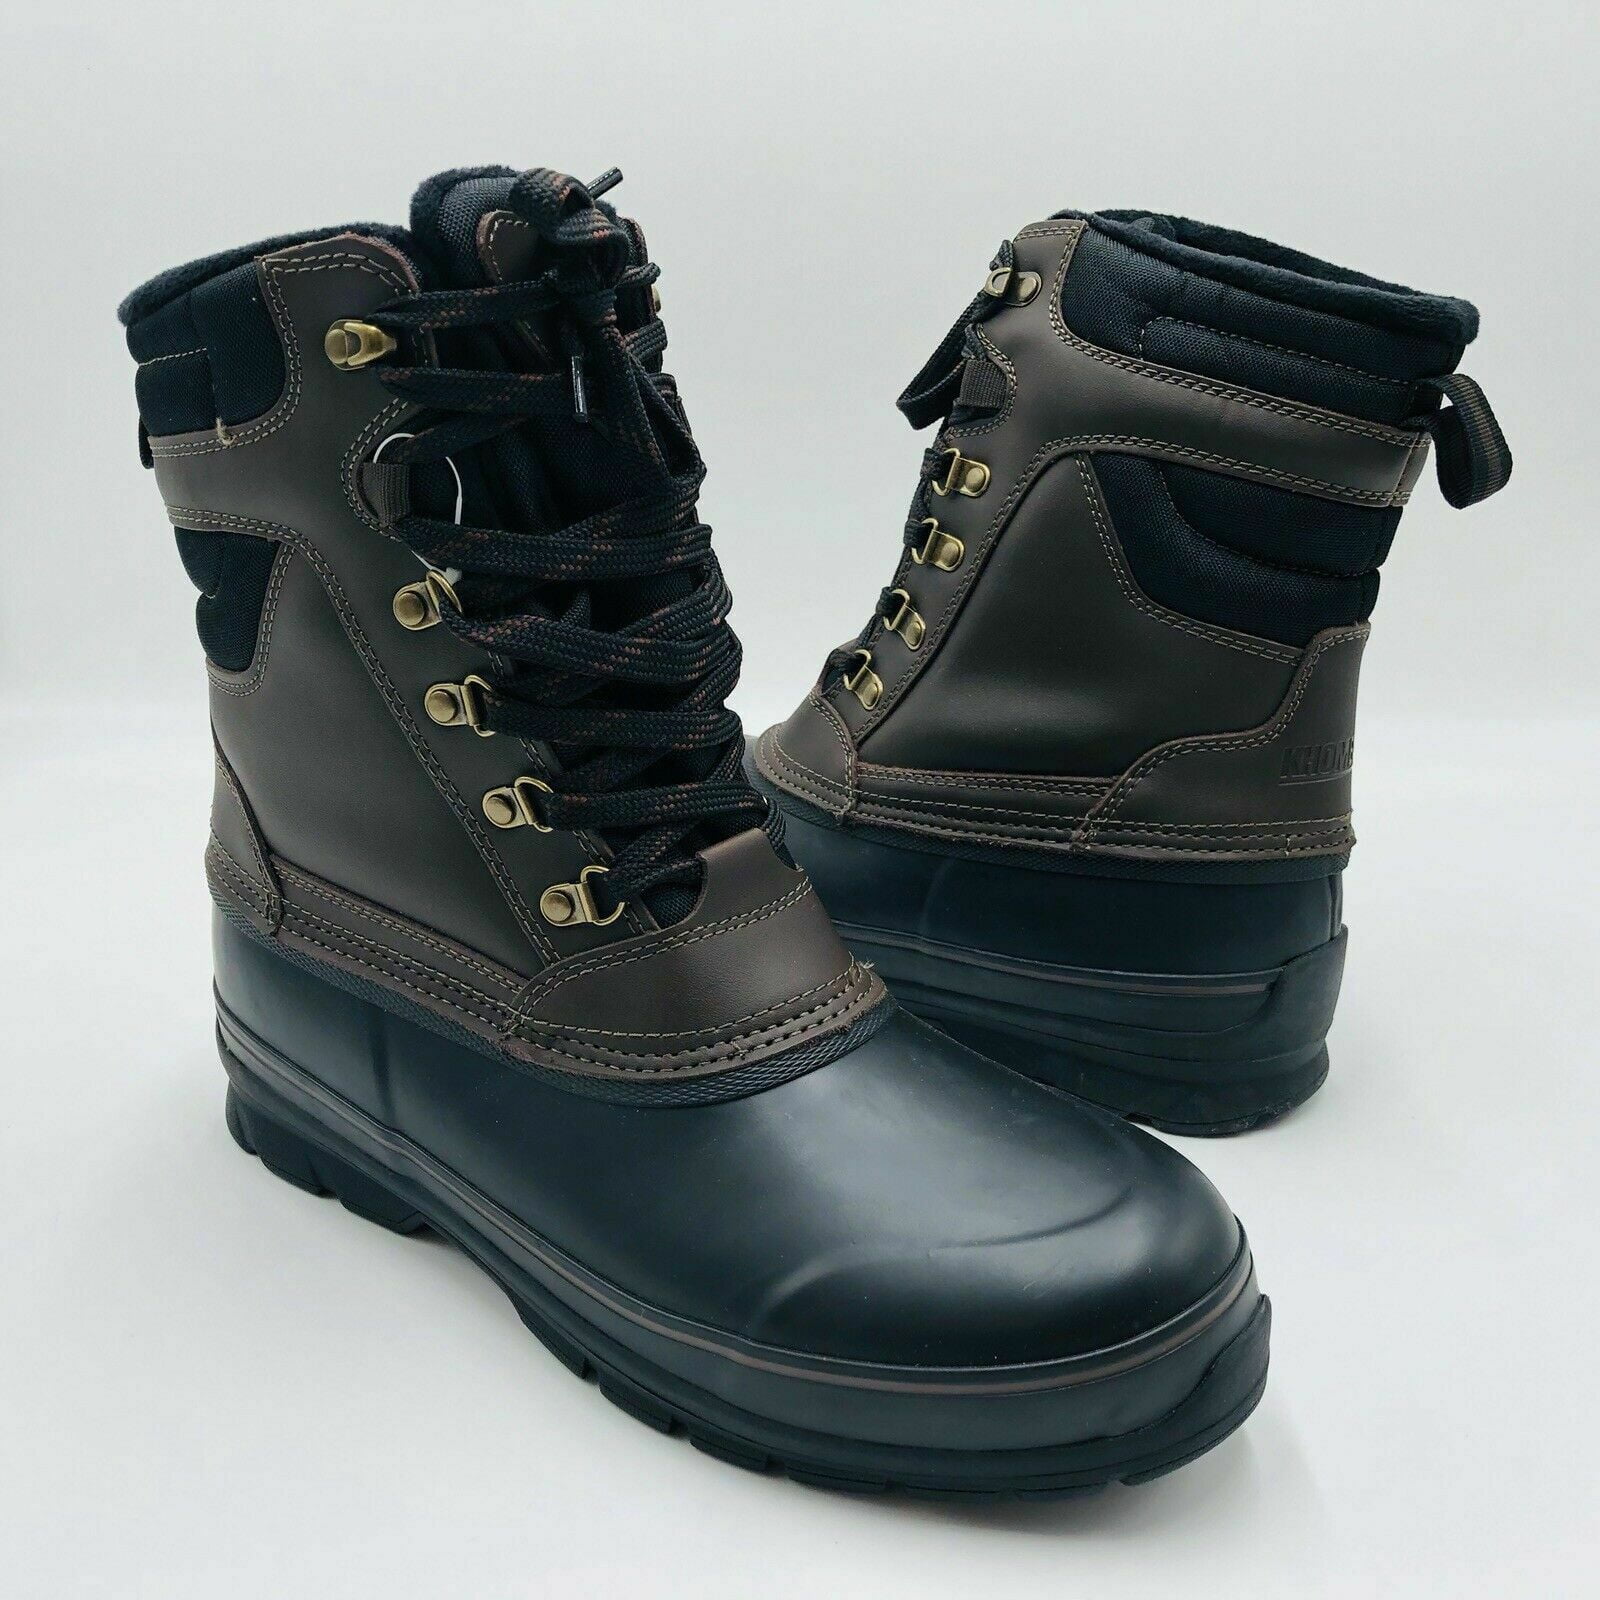 Mens Winter Snow Work Boots Steel Toe Cap Leather Waterproof Outdoor Light Hiker 